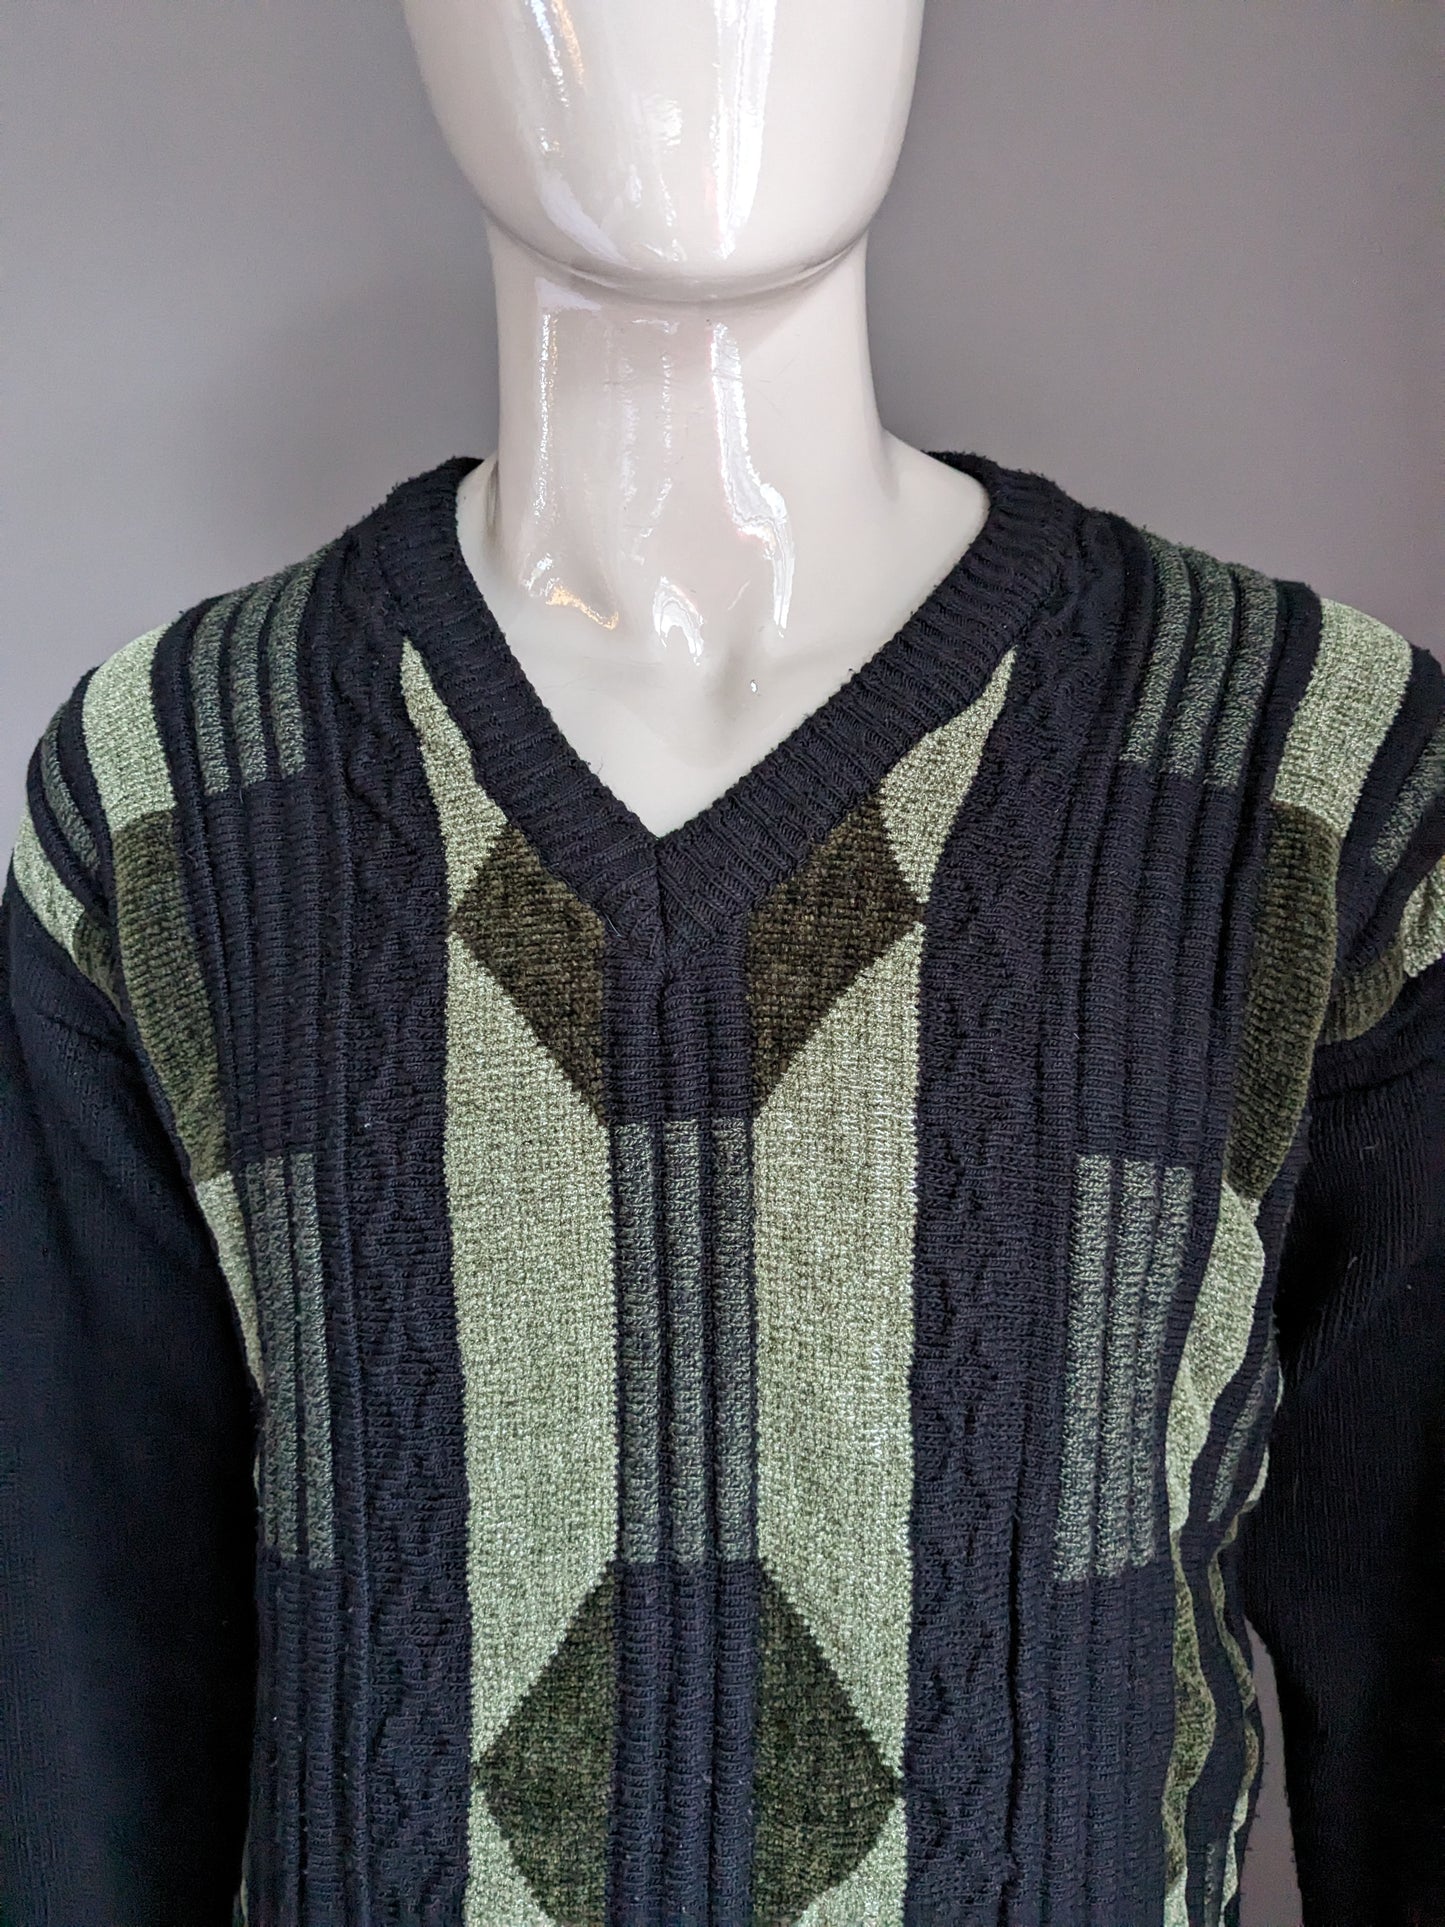 Pull en laine vintage avec col en V. Couleur verte noire. Taille L.